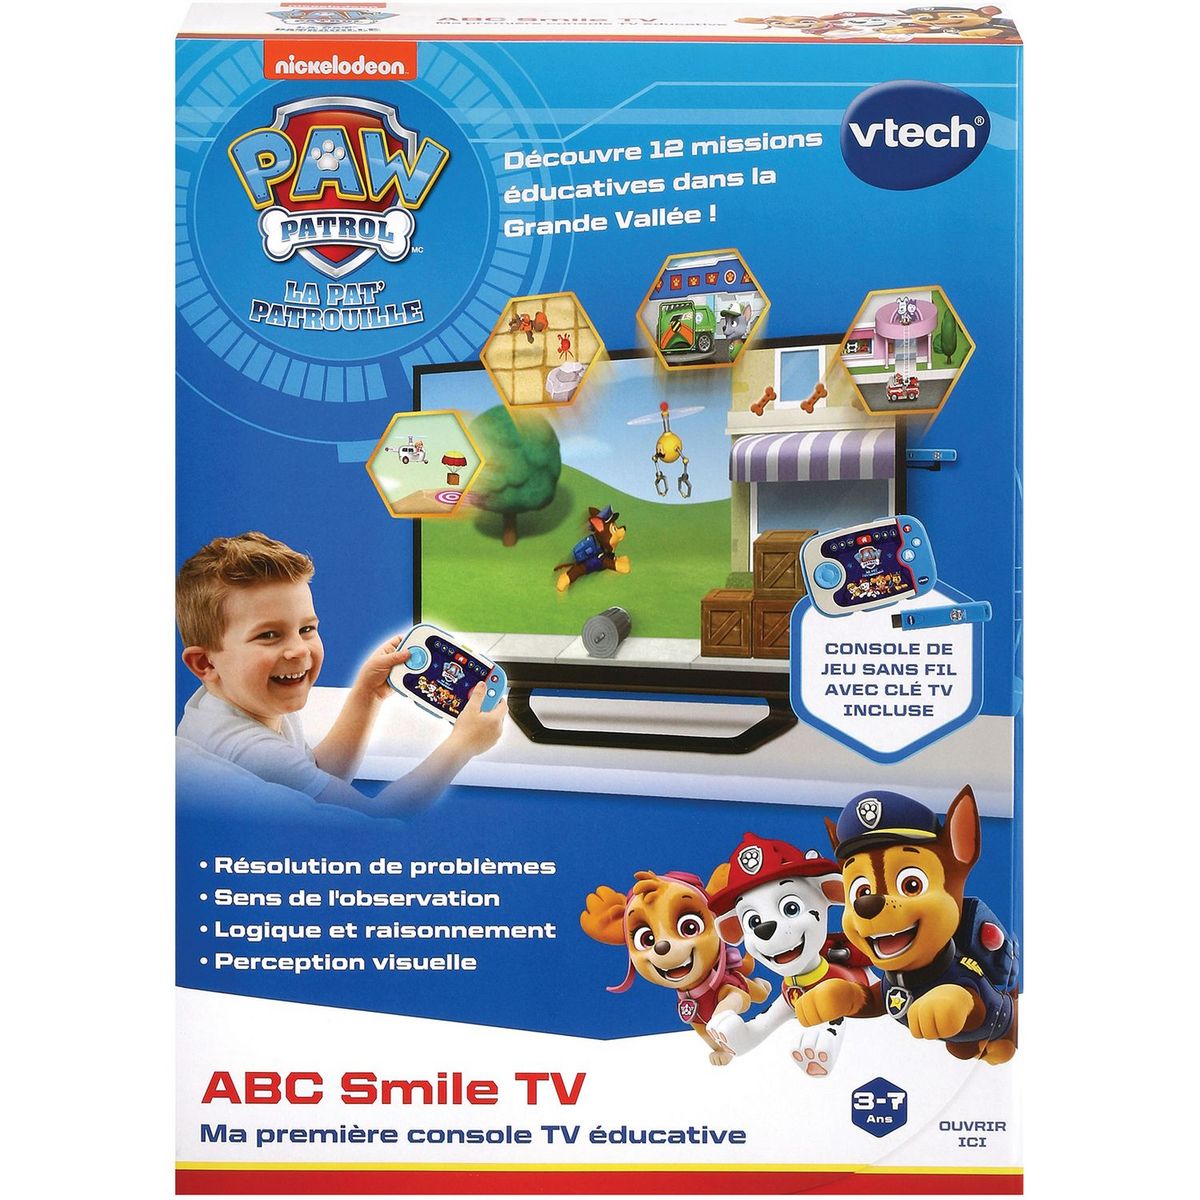 Pat patrouille - abc smile tv bleu Vtech